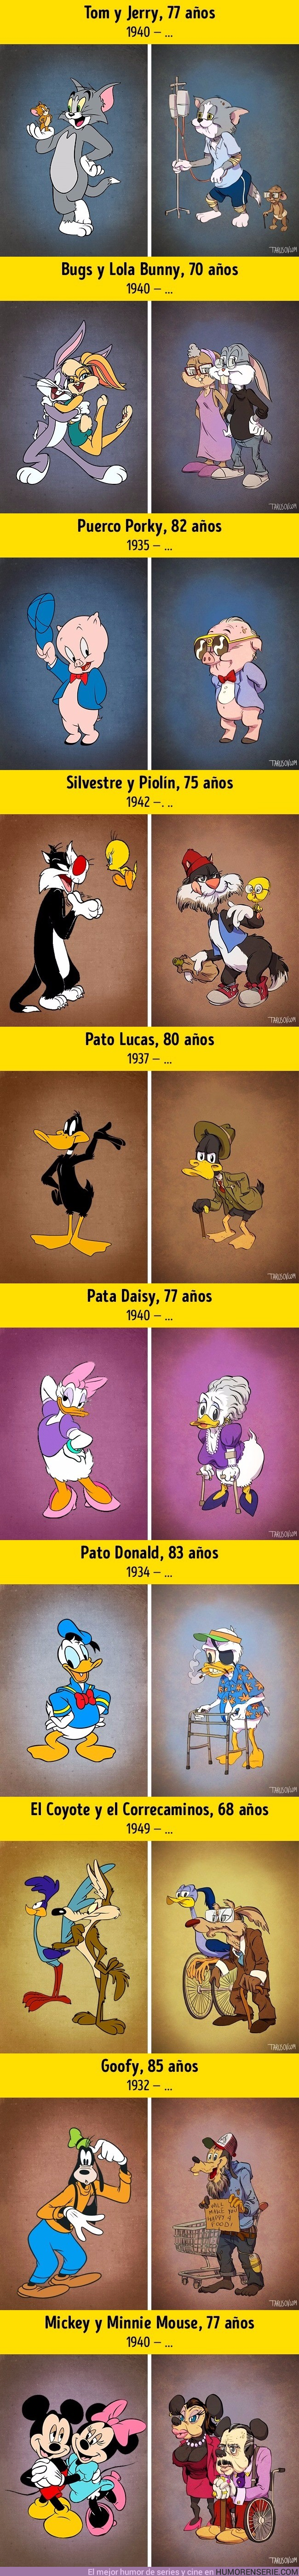 17445 - Así serían estos personajes de Disney si envejecieran como nosotros